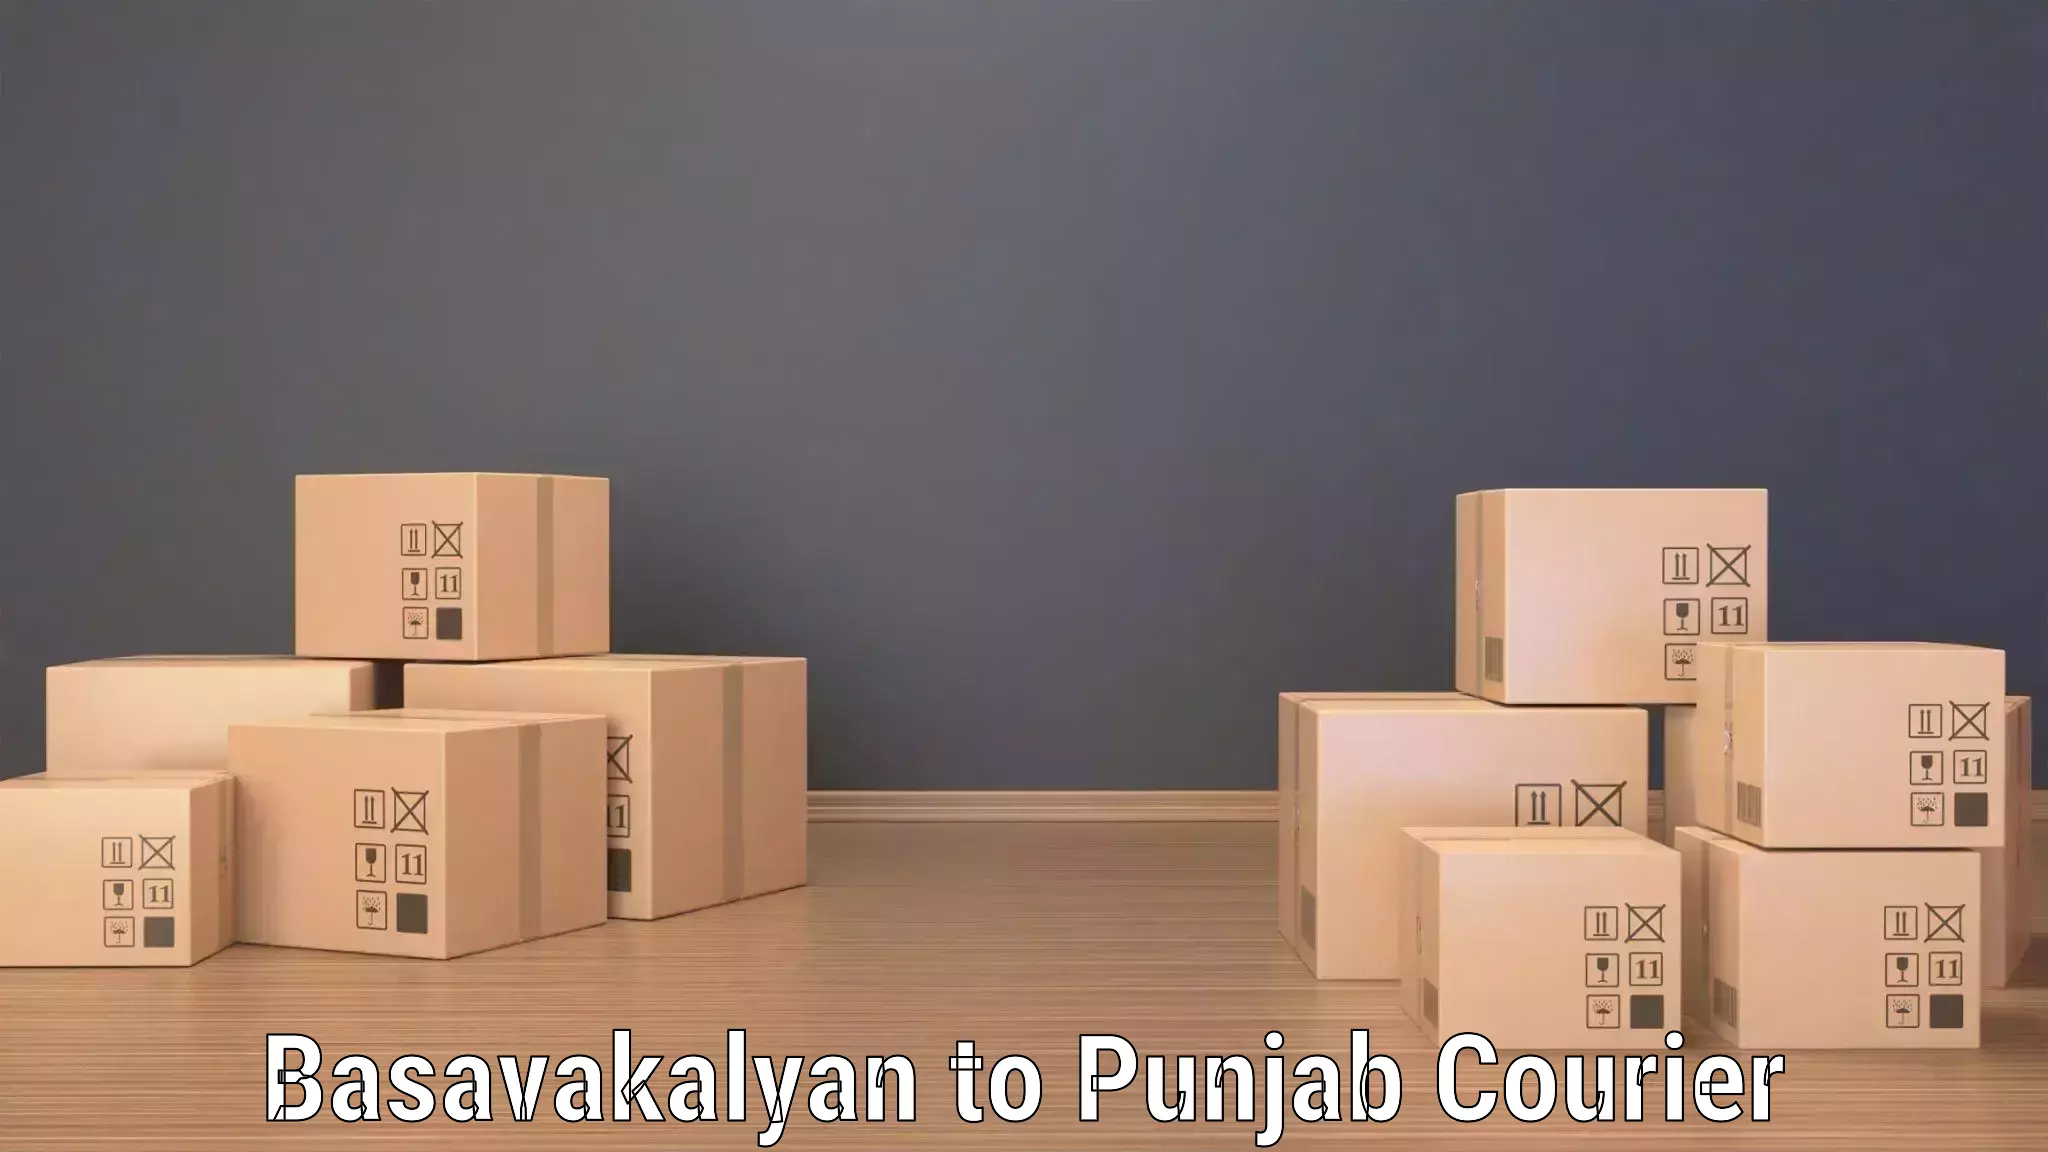 High-efficiency logistics Basavakalyan to Zirakpur